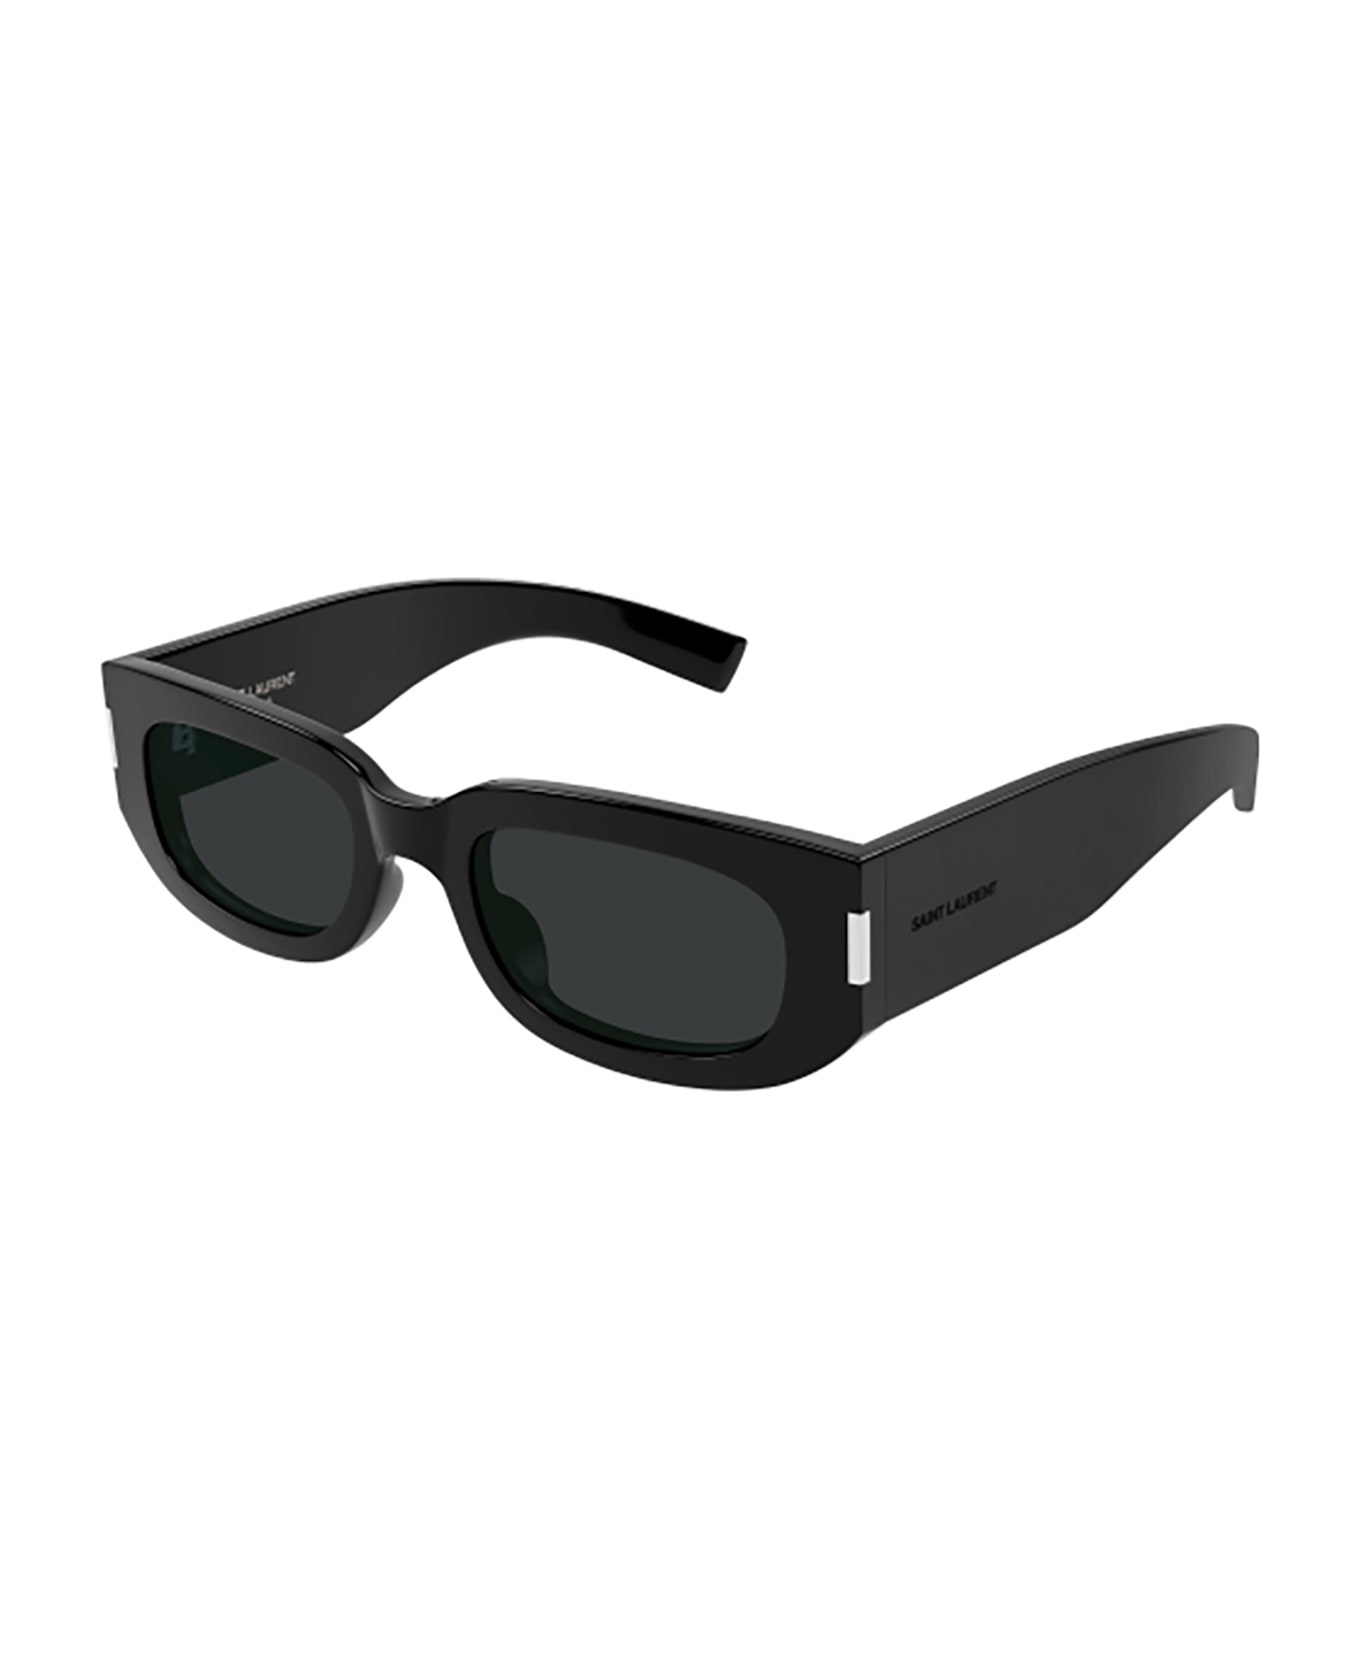 Saint Laurent Eyewear Sl 697 Sunglasses - 001 black black black